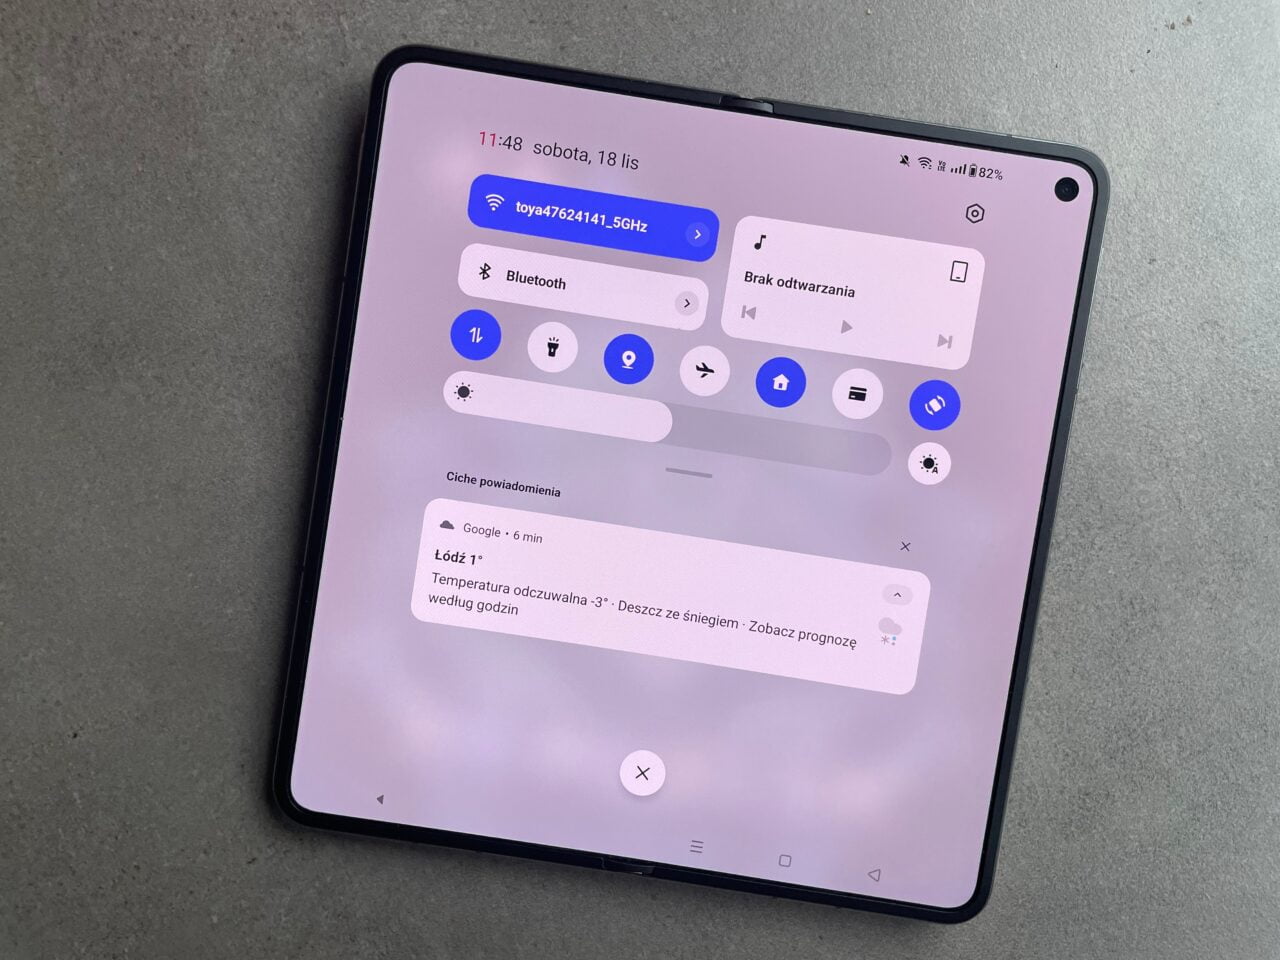 Tablet z otwartym menu szybkich ustawień i powiadomieniami, wyświetlającymi m.in. stan baterii, połączenia Wi-Fi, Bluetooth oraz pogodę. recenja oneplus open